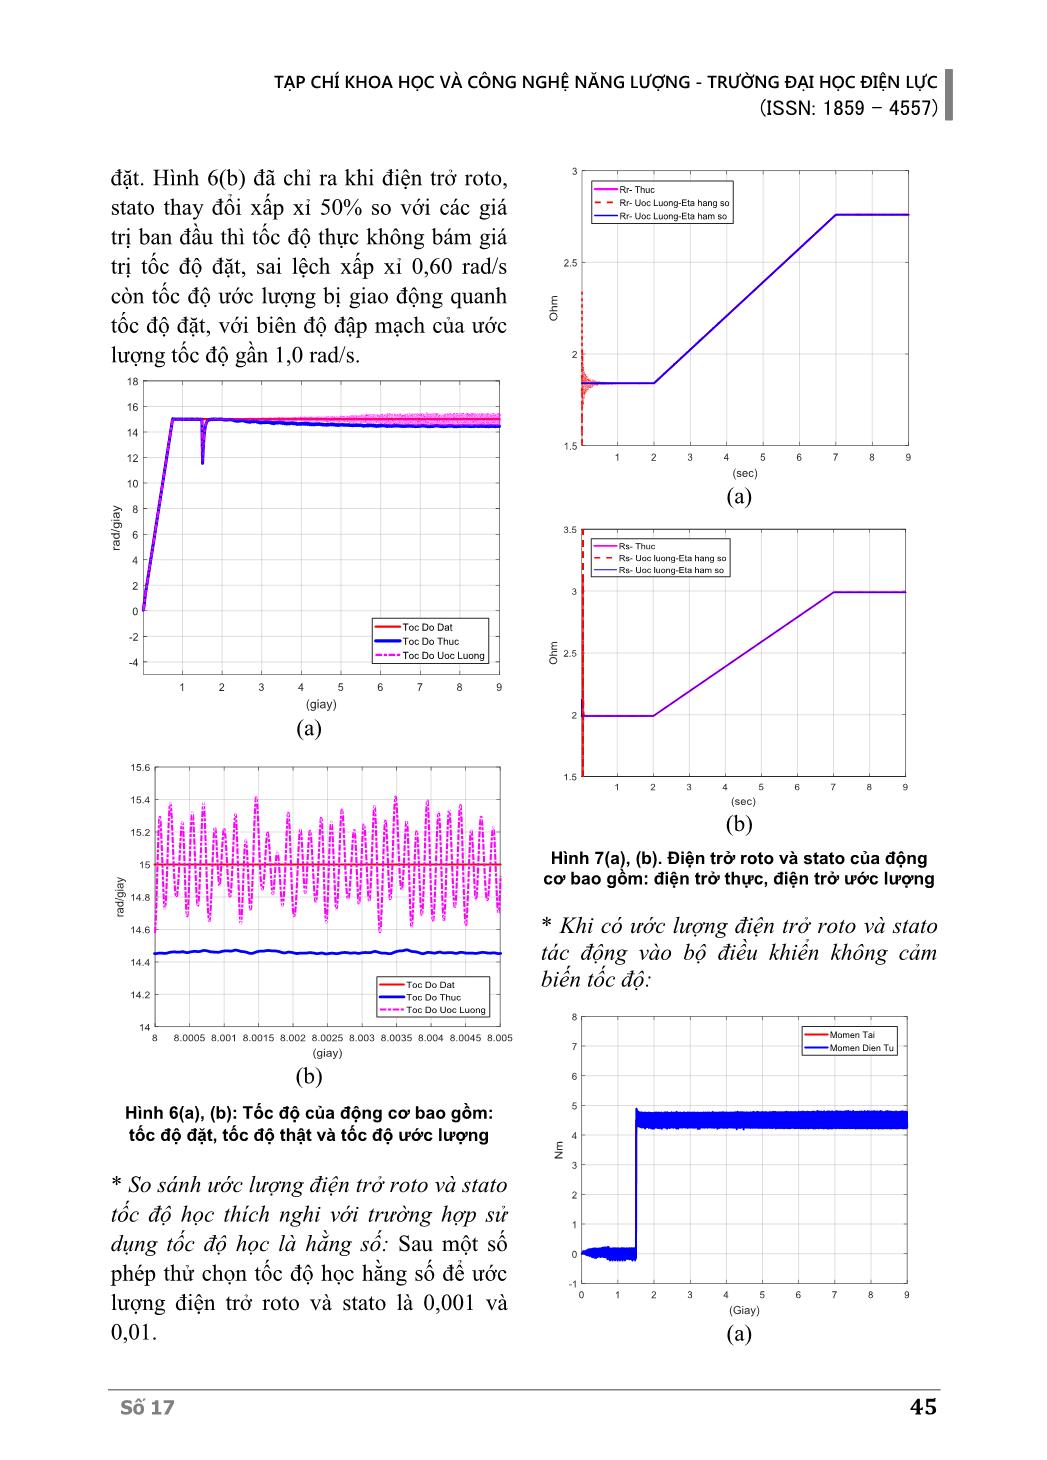 Thuật toán học Nơron sửa đổi để ước lượng điện trở Roto và Stato khi đang hoạt động cho truyền động động cơ không đồng bộ không cảm biến tốc độ trang 7